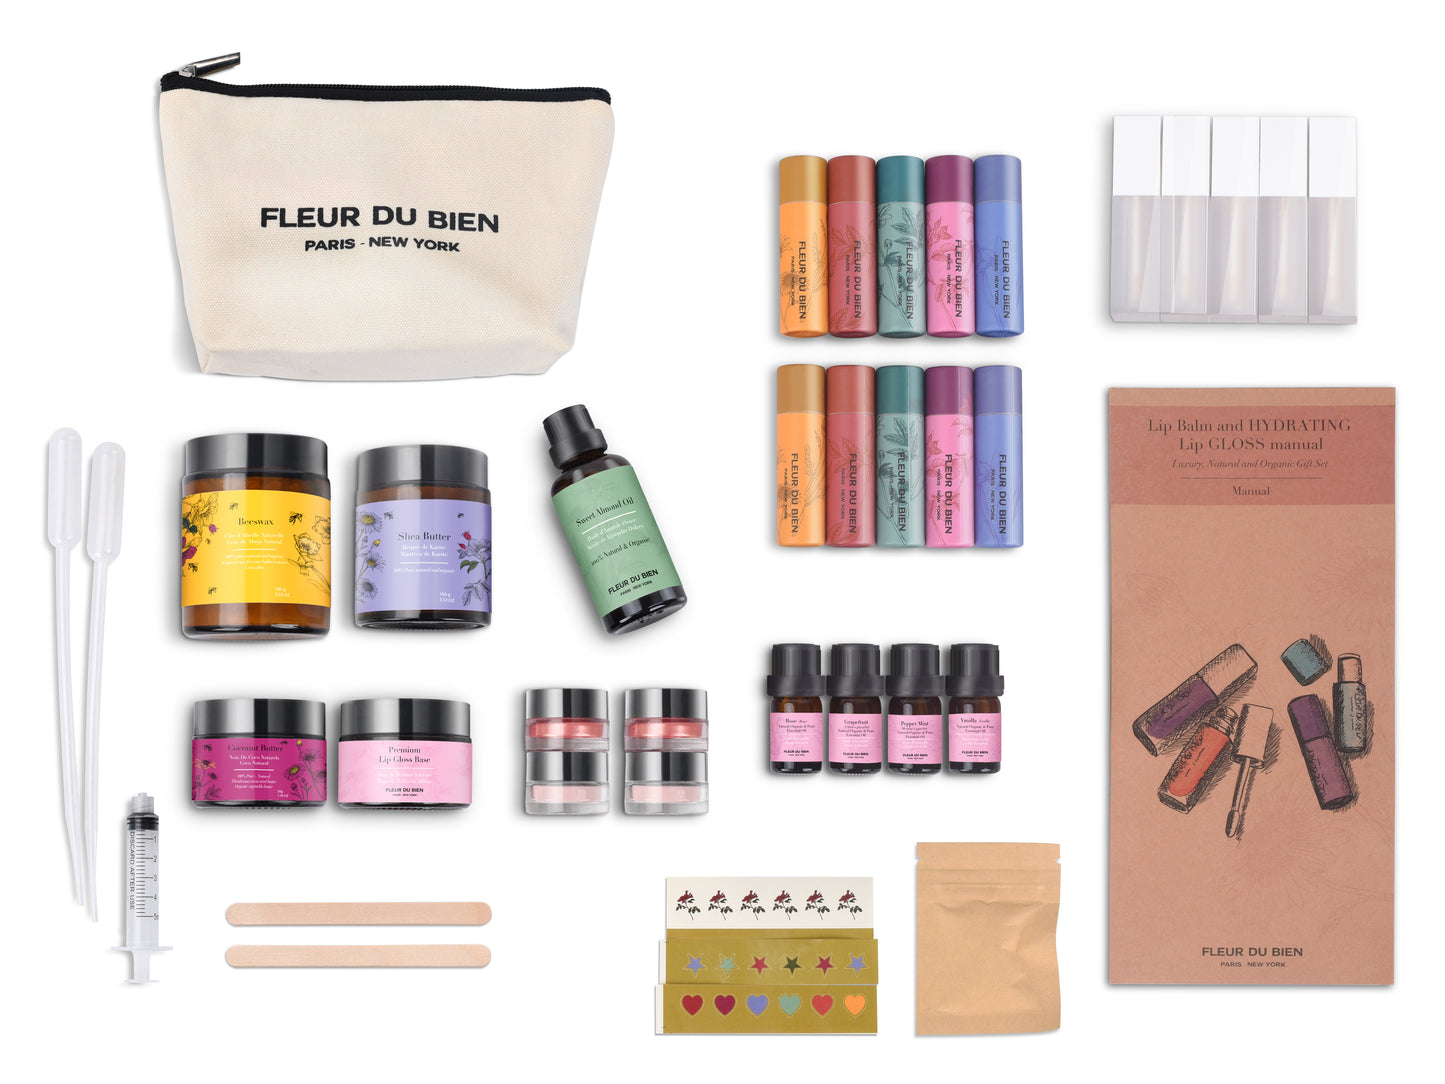 Handmade DIY Lip Gloss Starter Kit Kit With Moisturizing Gel